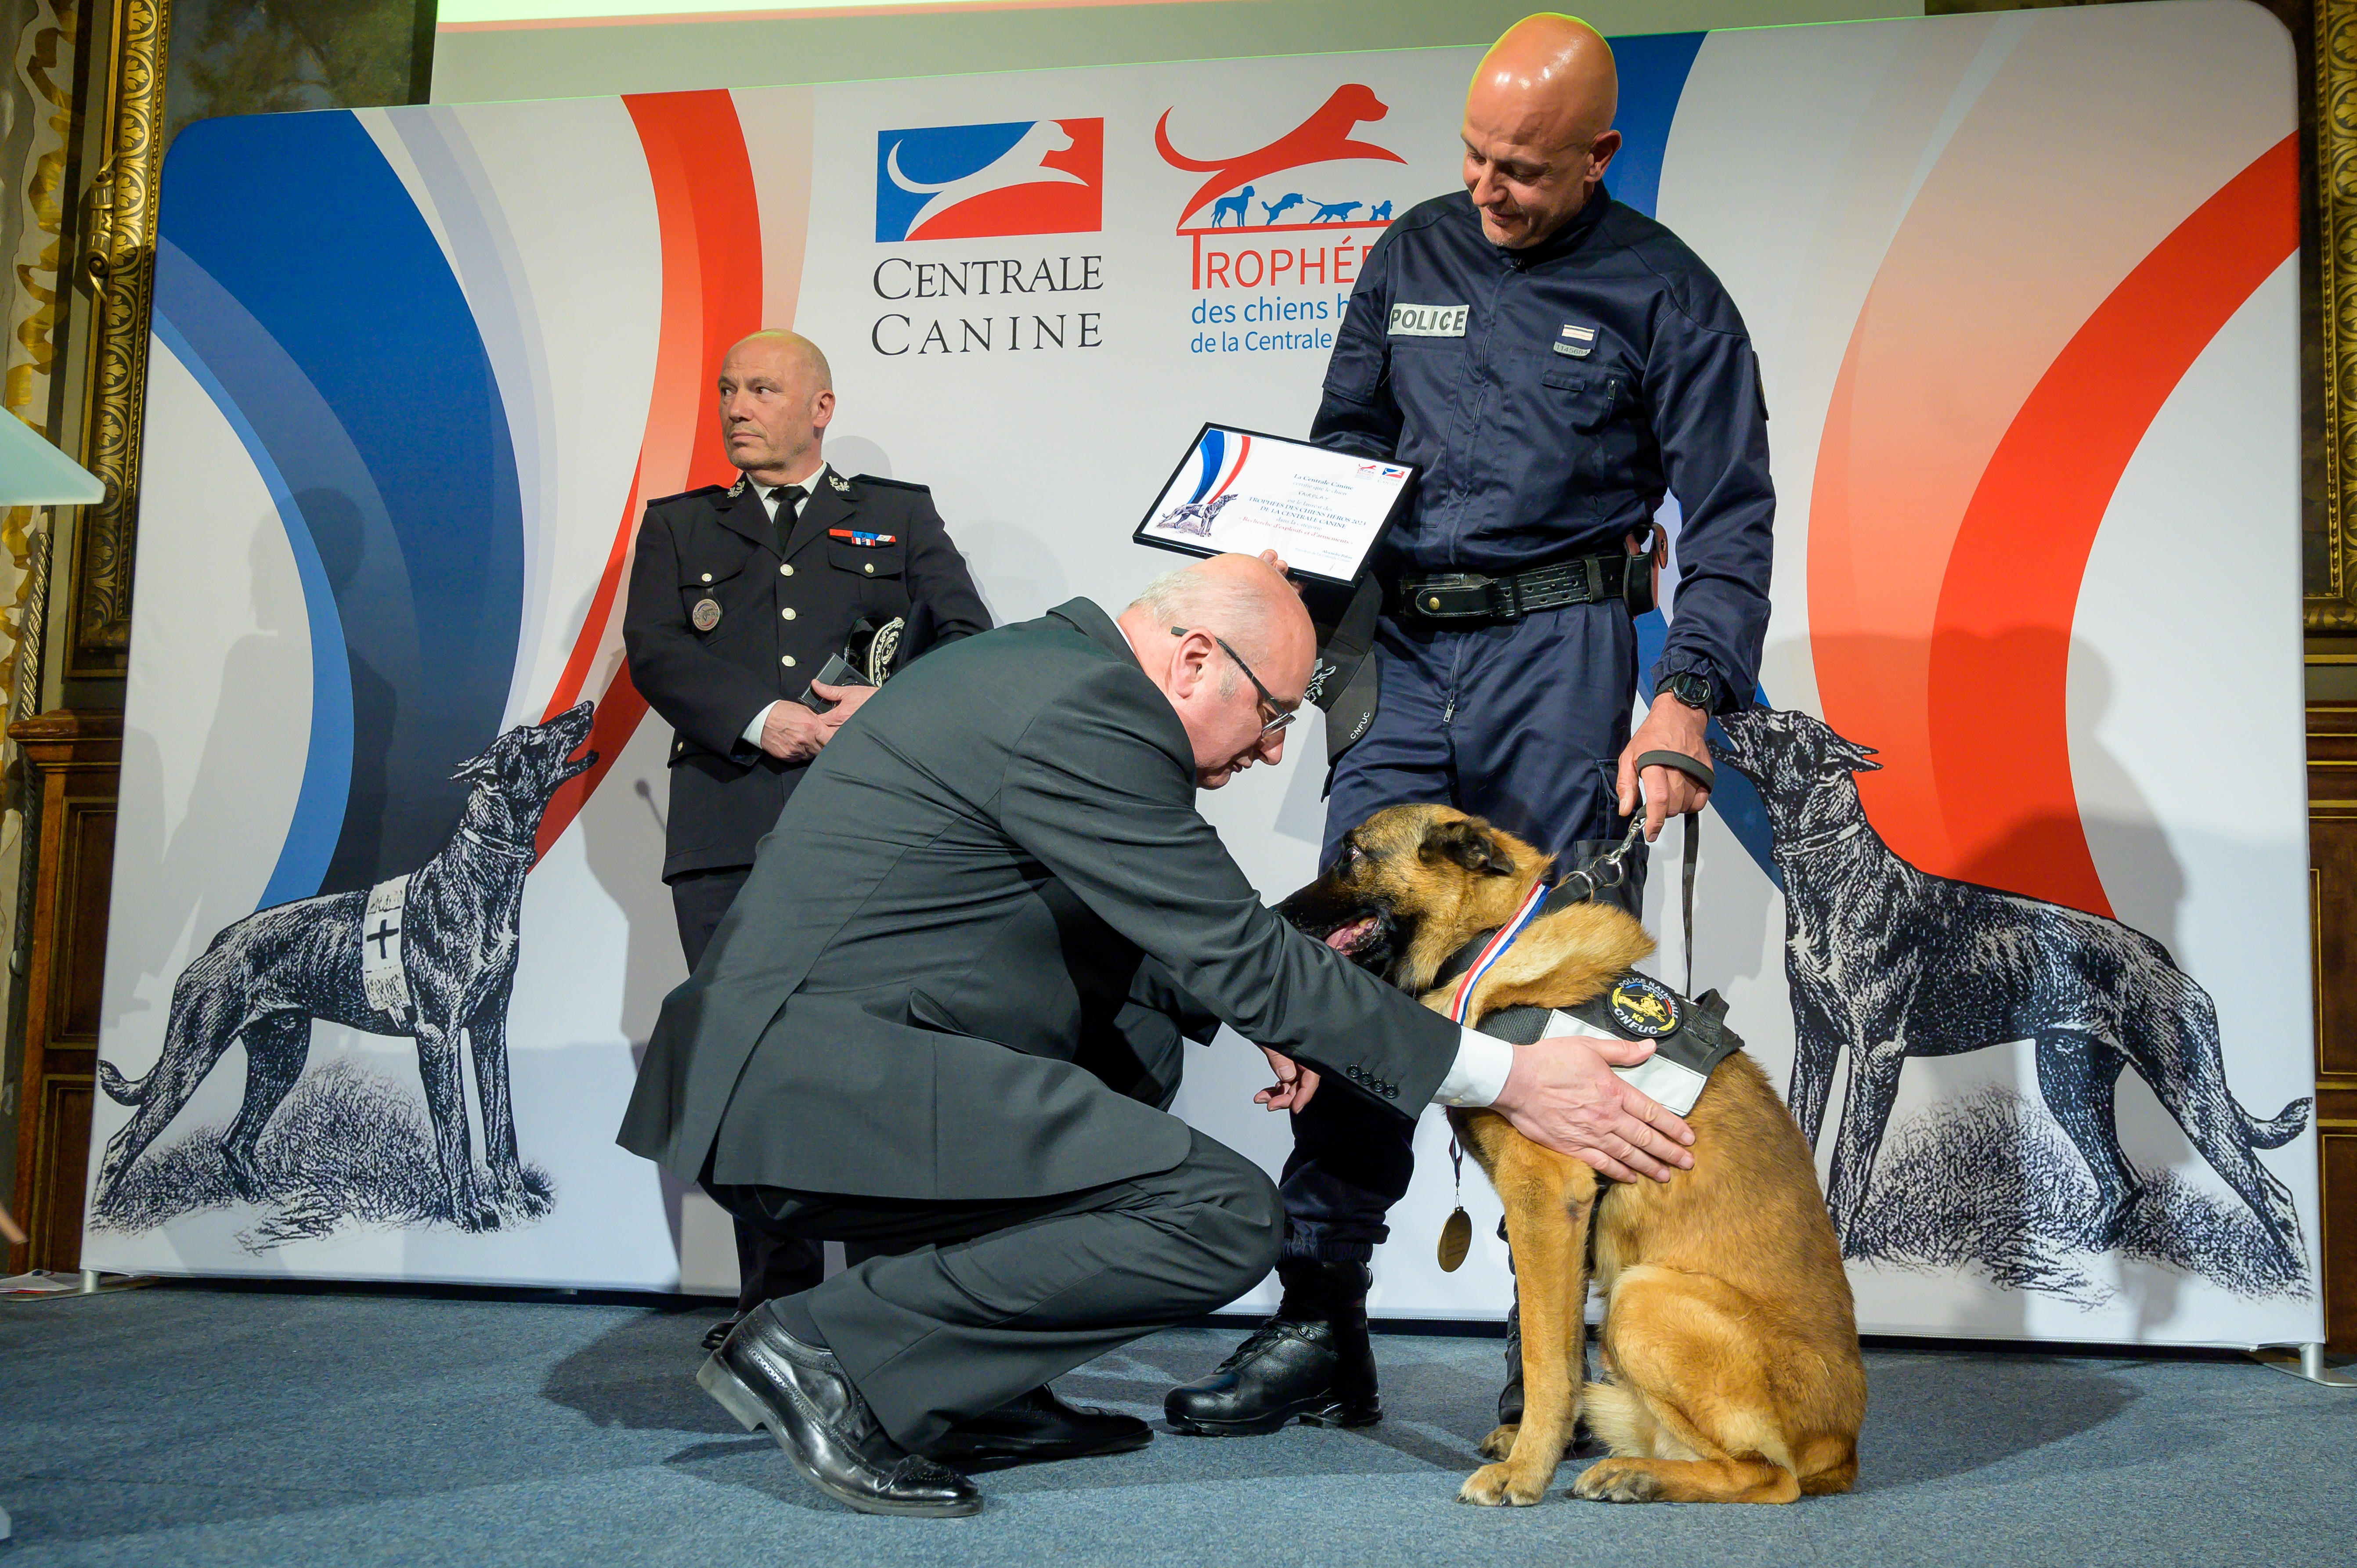 Fairplay, berger malinois de 12 ans, conduit par Yann Orlowcizc a remporté un prix lors du Trophée chiens héros de la Centrale canine.